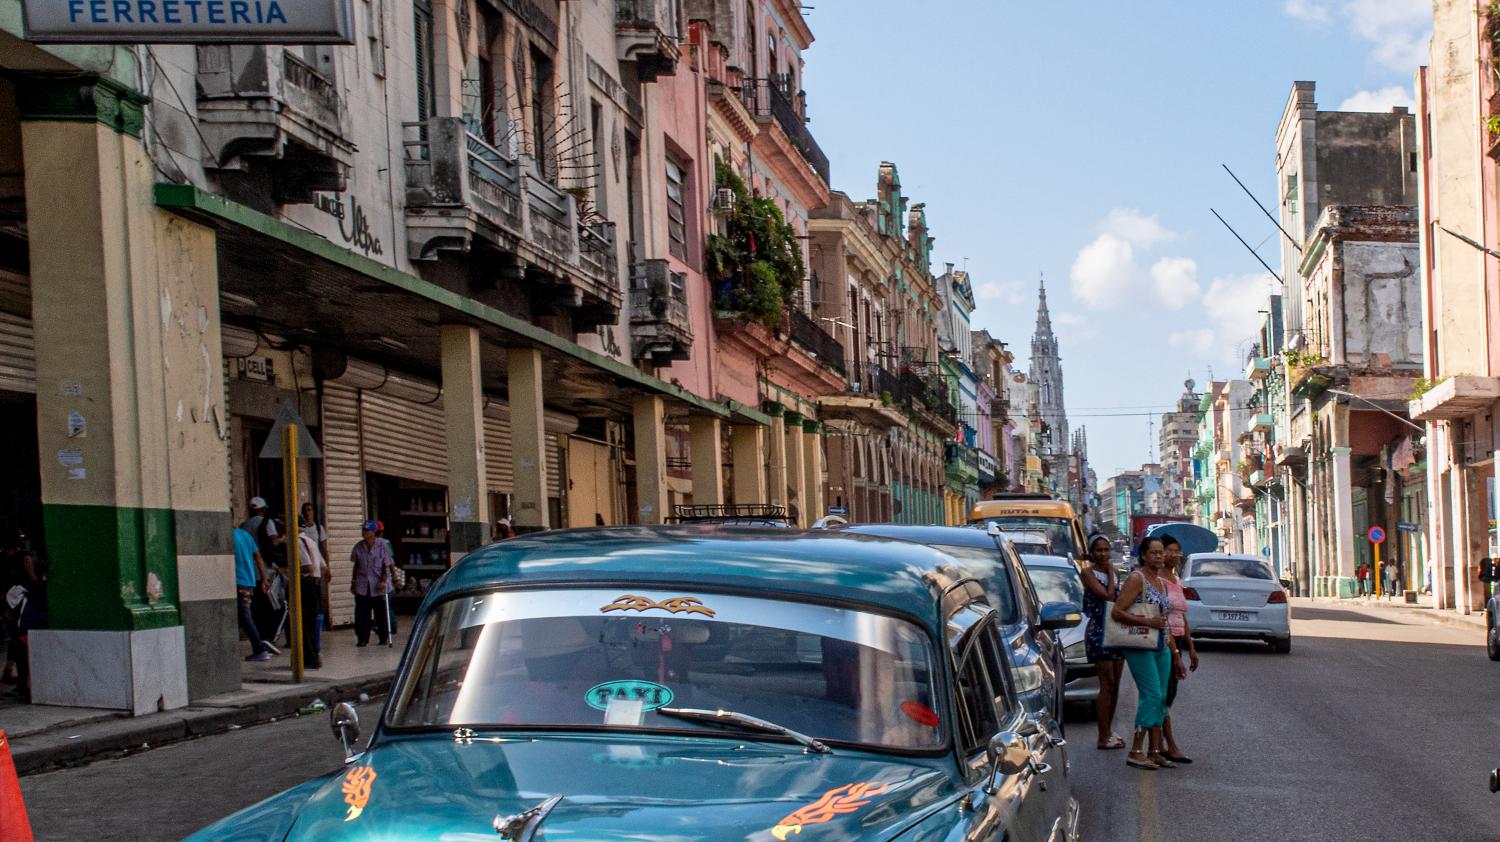 "Cette ville est comme une soupe, on peut y voir de tout" : à Cuba, La Havane fête ses 500 ans